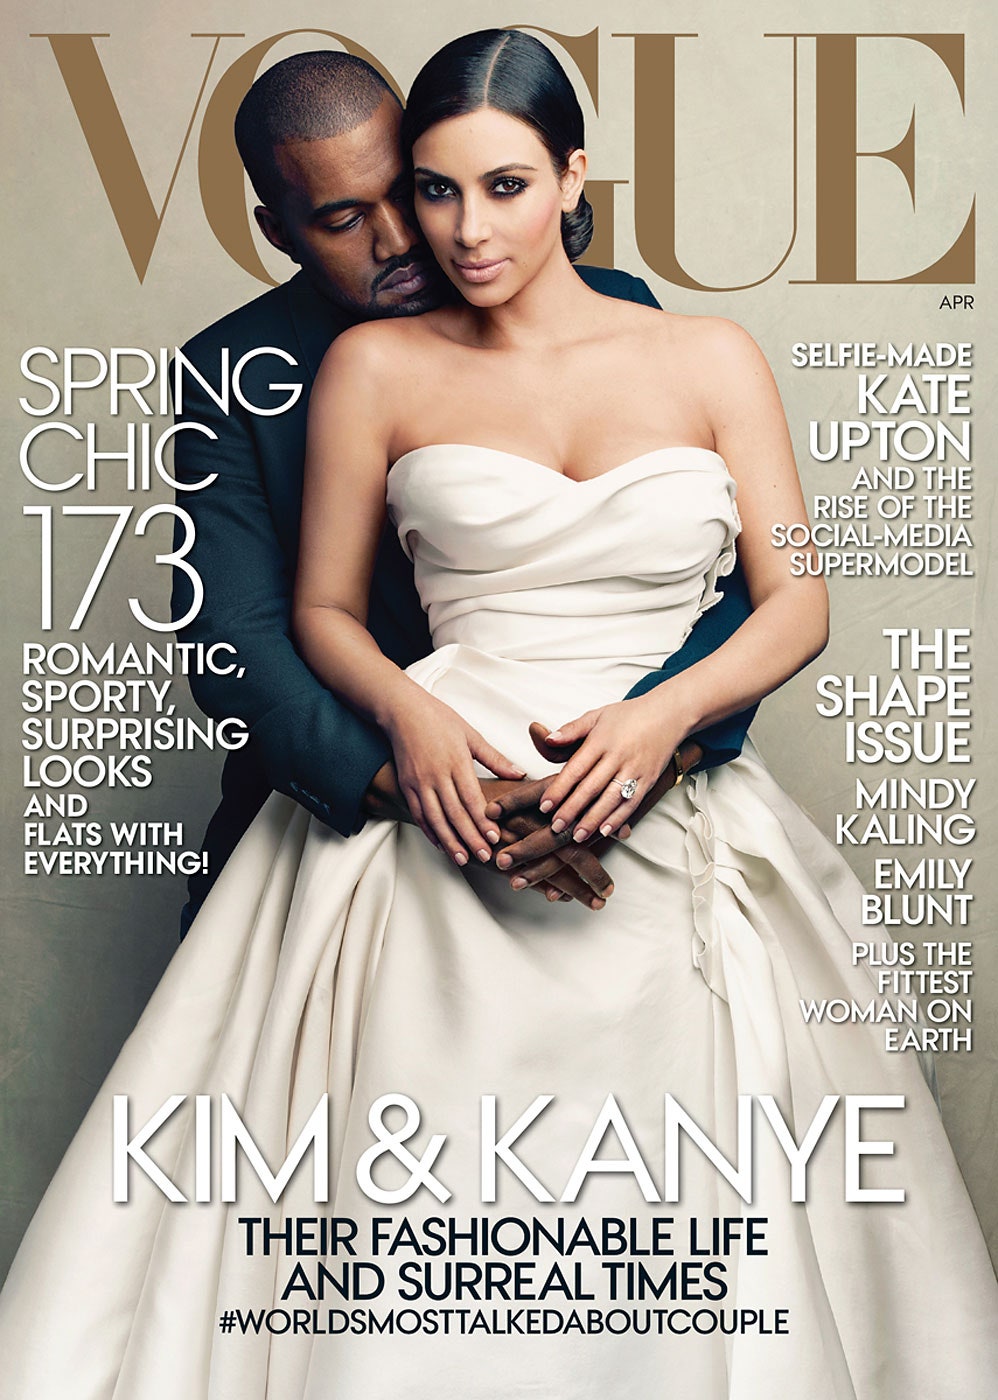 Канье Уэст и Ким Кардашьян в Lanvin на обложке Vogue апрель 2014